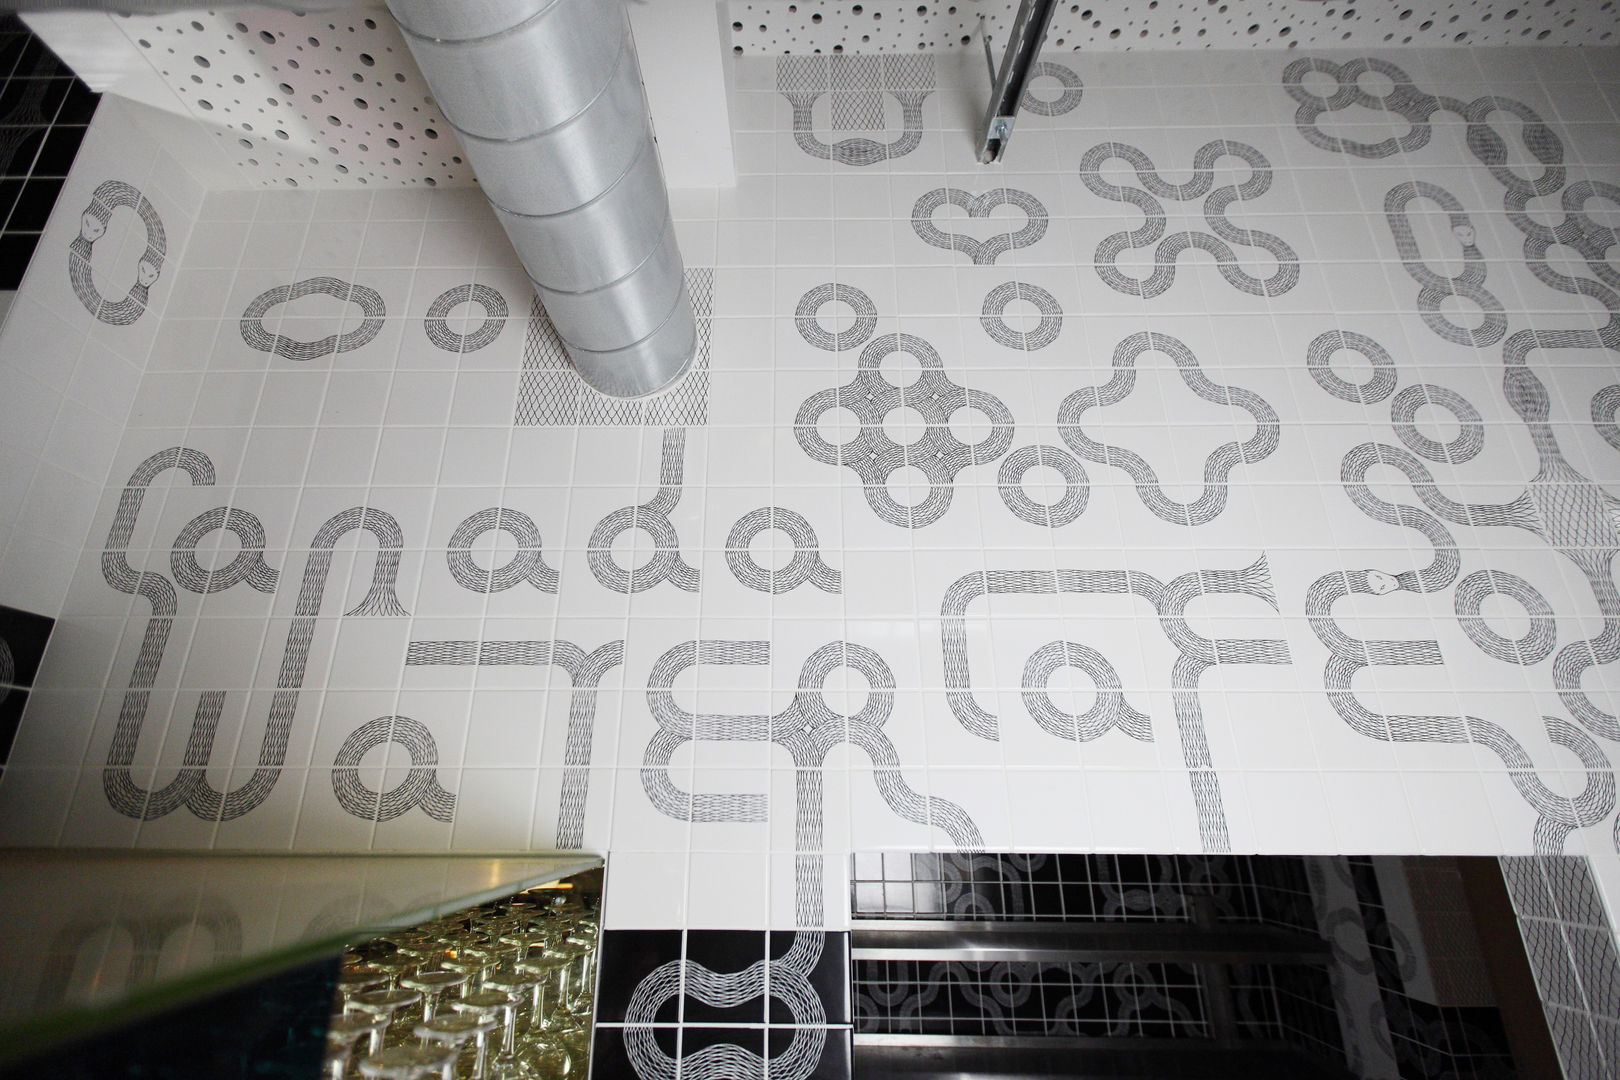 Ouroboros Tile installation at Canada Water Cafe, London Peter Ibruegger Studio 商业空间 餐廳